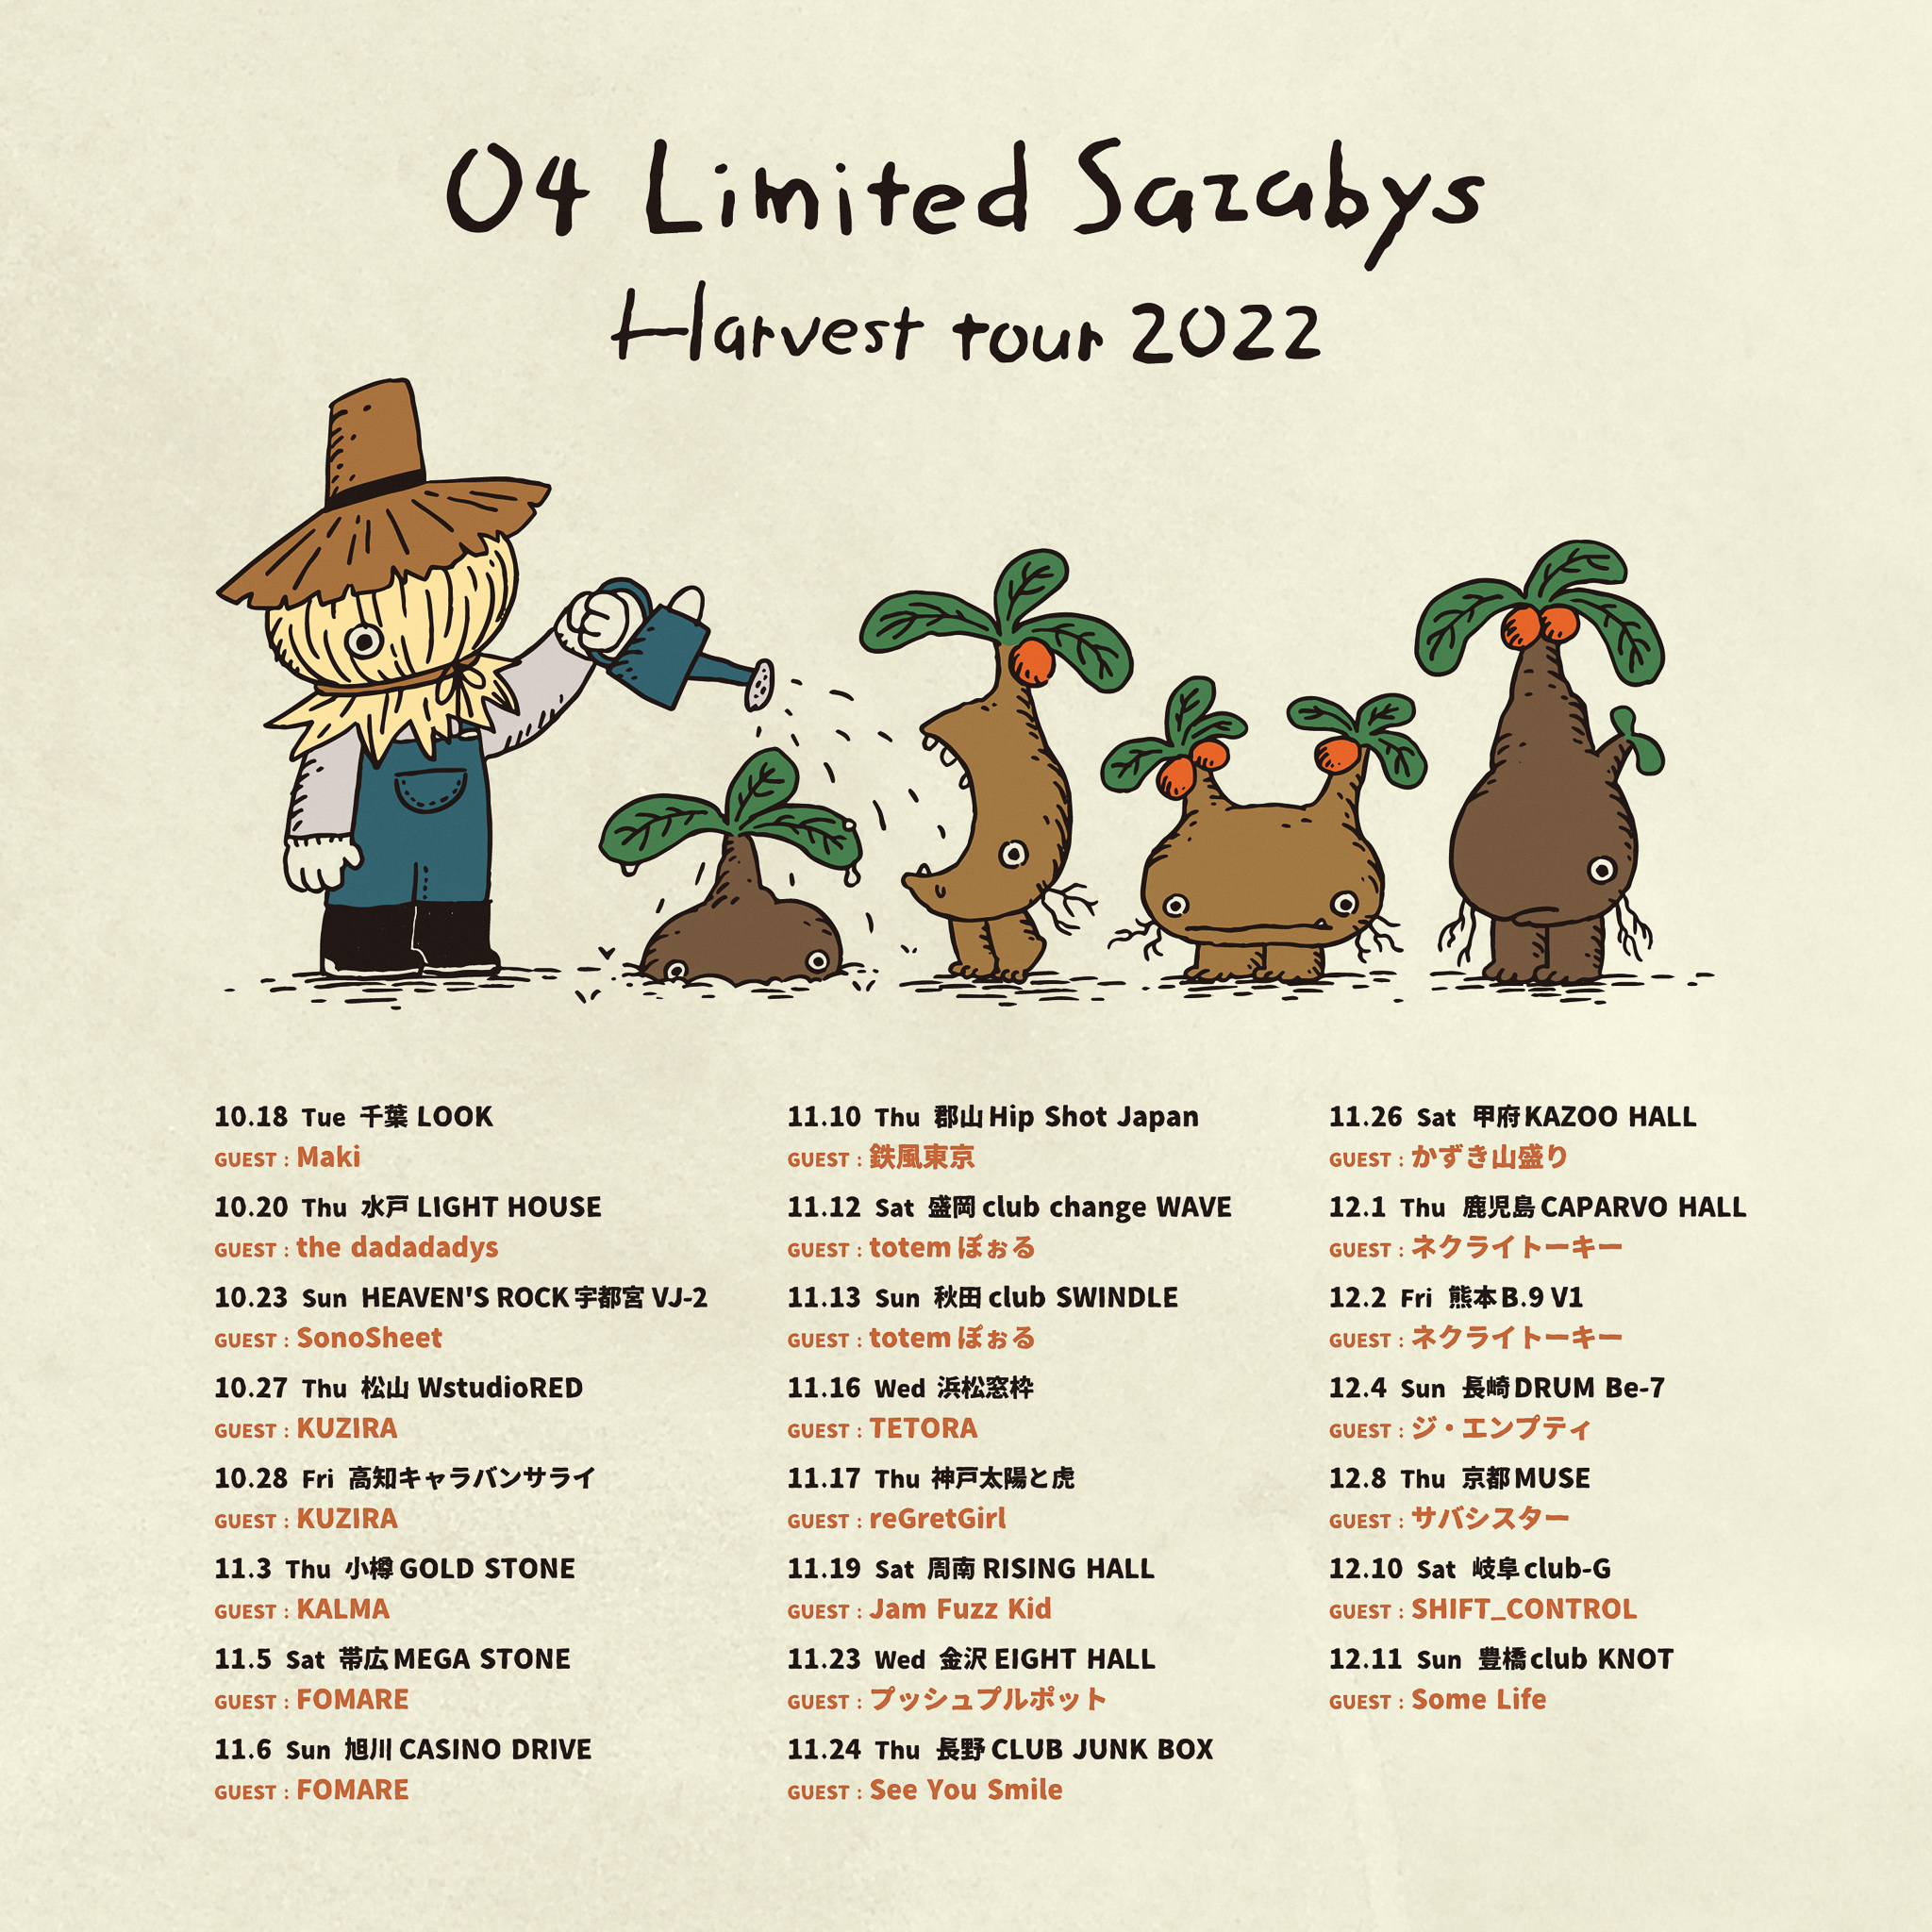 【秋田】04 Limited Sazabys "Harvest tour 2022" (秋田club SWINDLE)